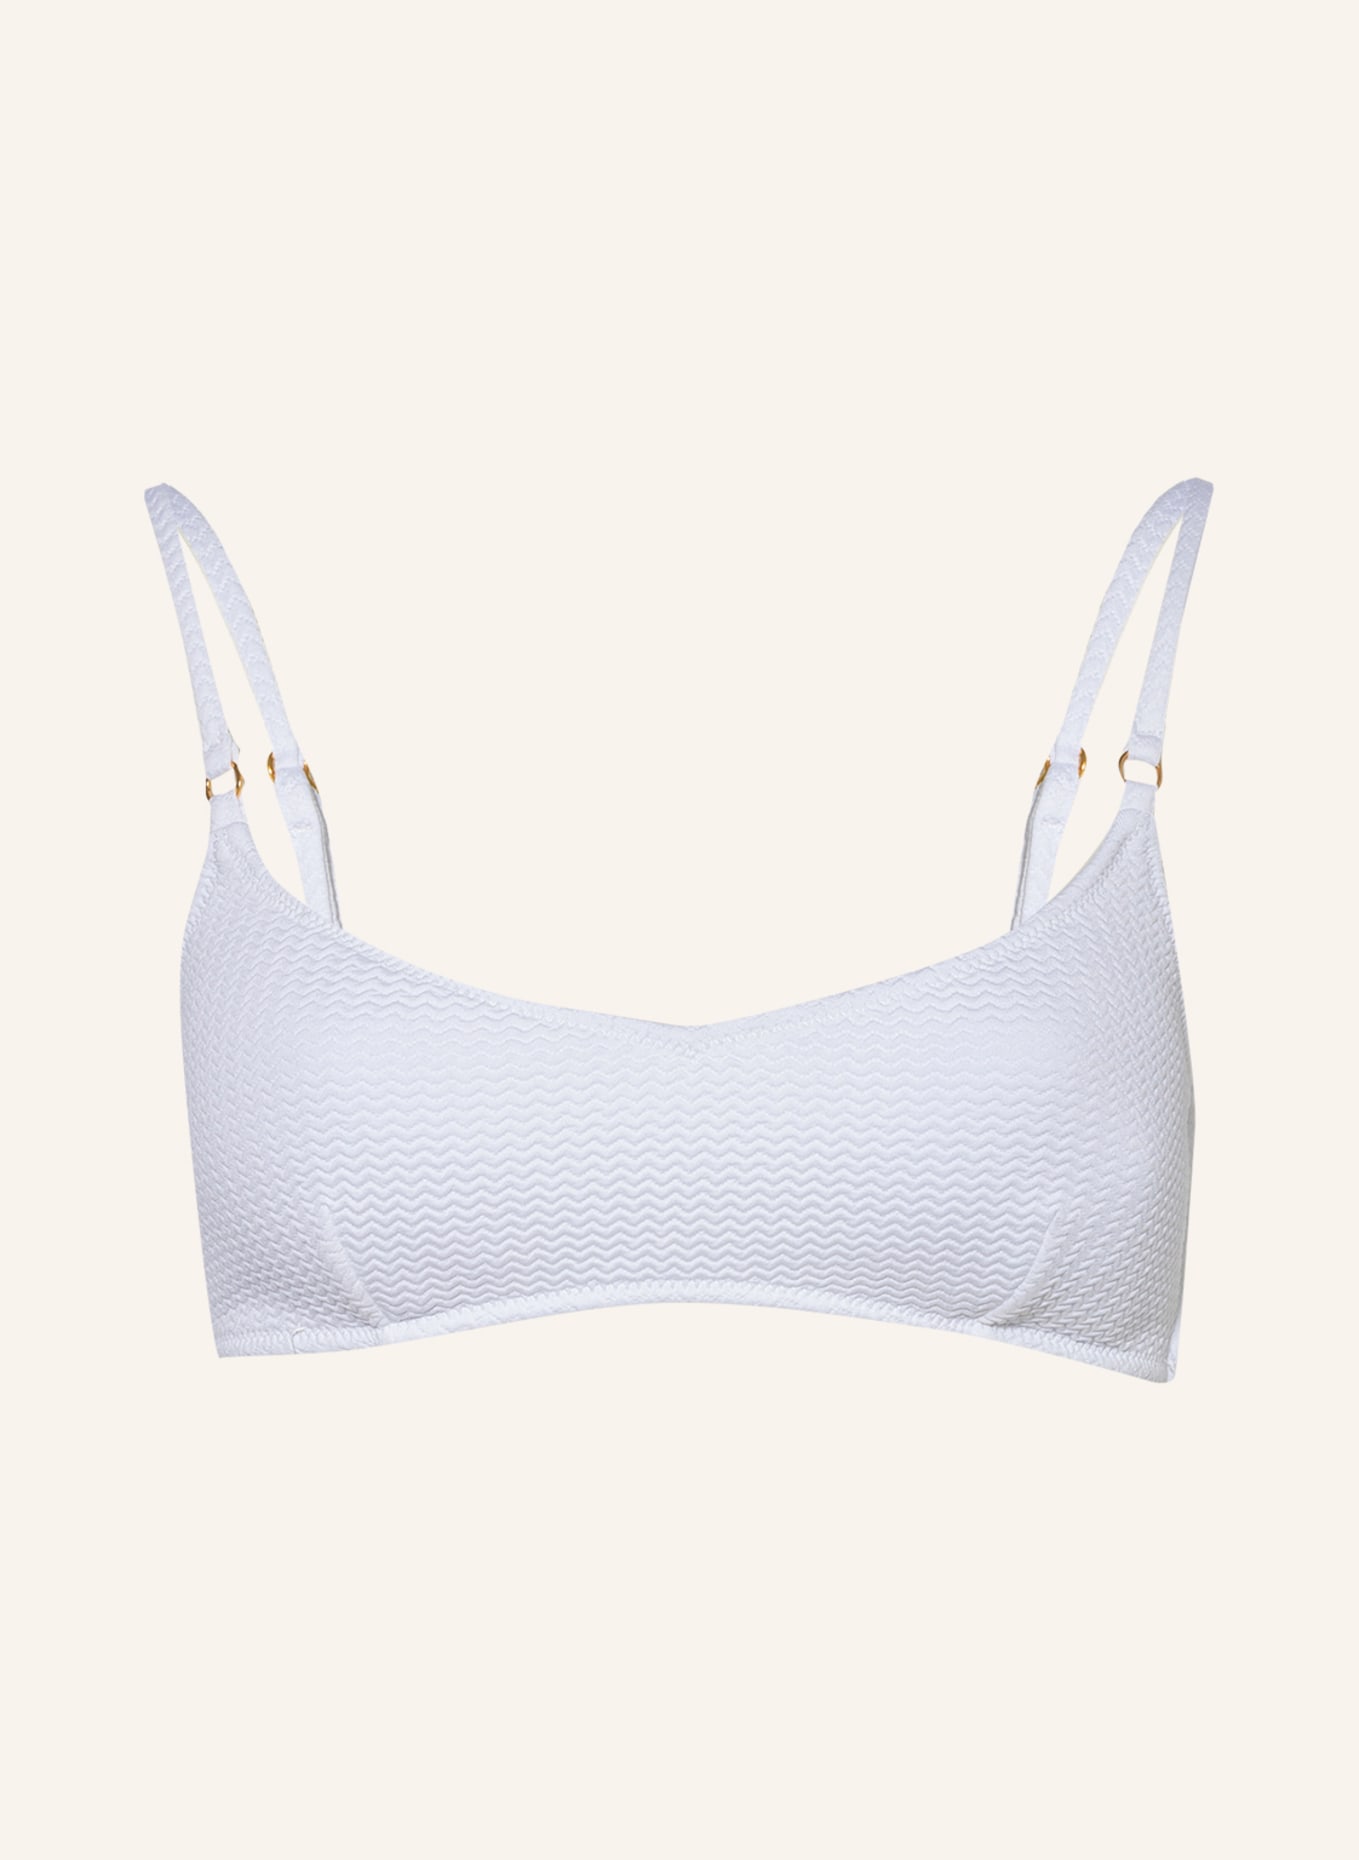 SEAFOLLY Bralette bikini top SEA DIVE, Color: WHITE (Image 1)